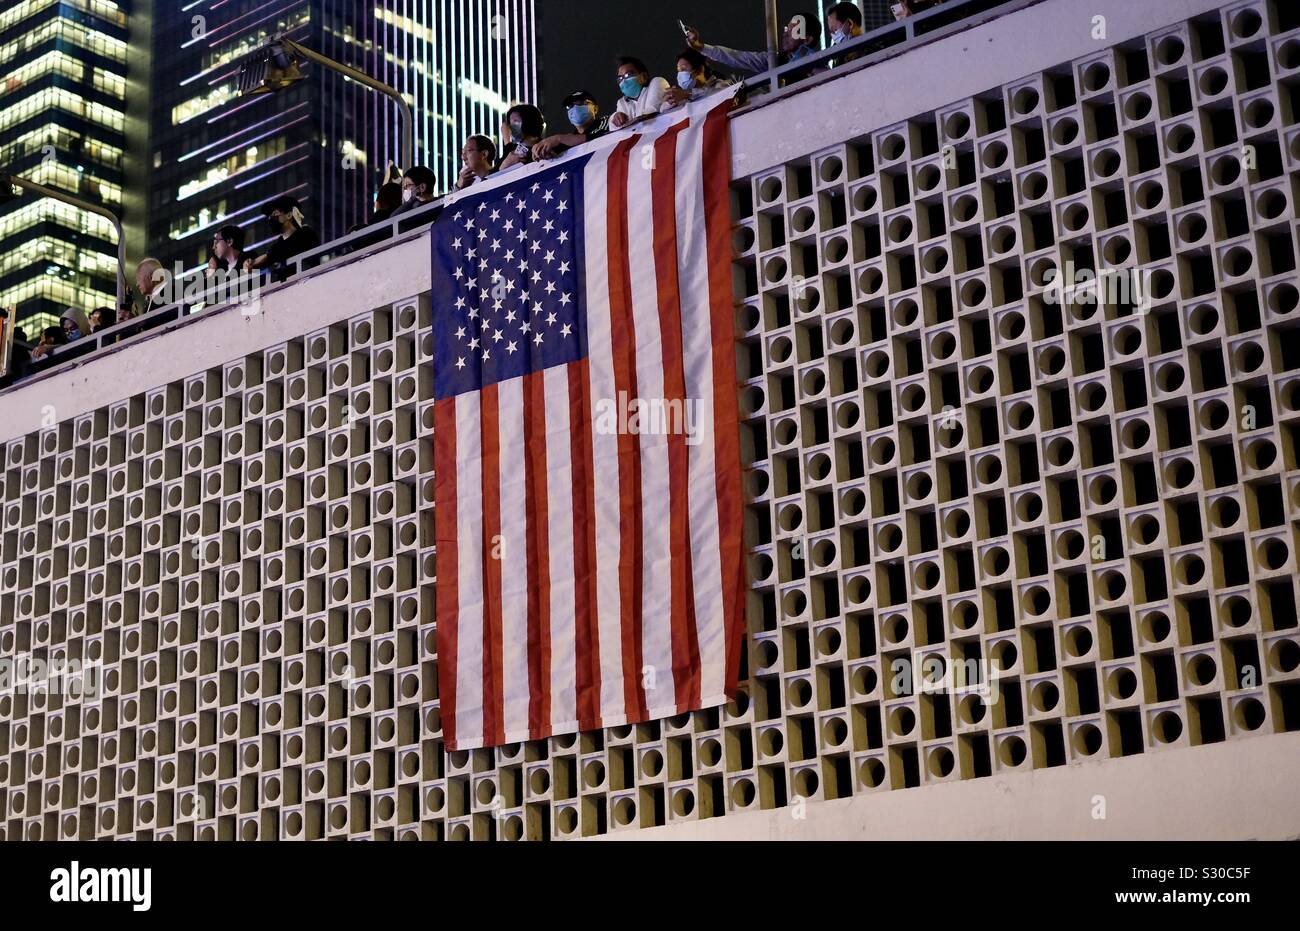 Hongkong - November 28, 2019: Hongkonger thanking USA by holding American flag on demonstration in downtown HongKong Stock Photo